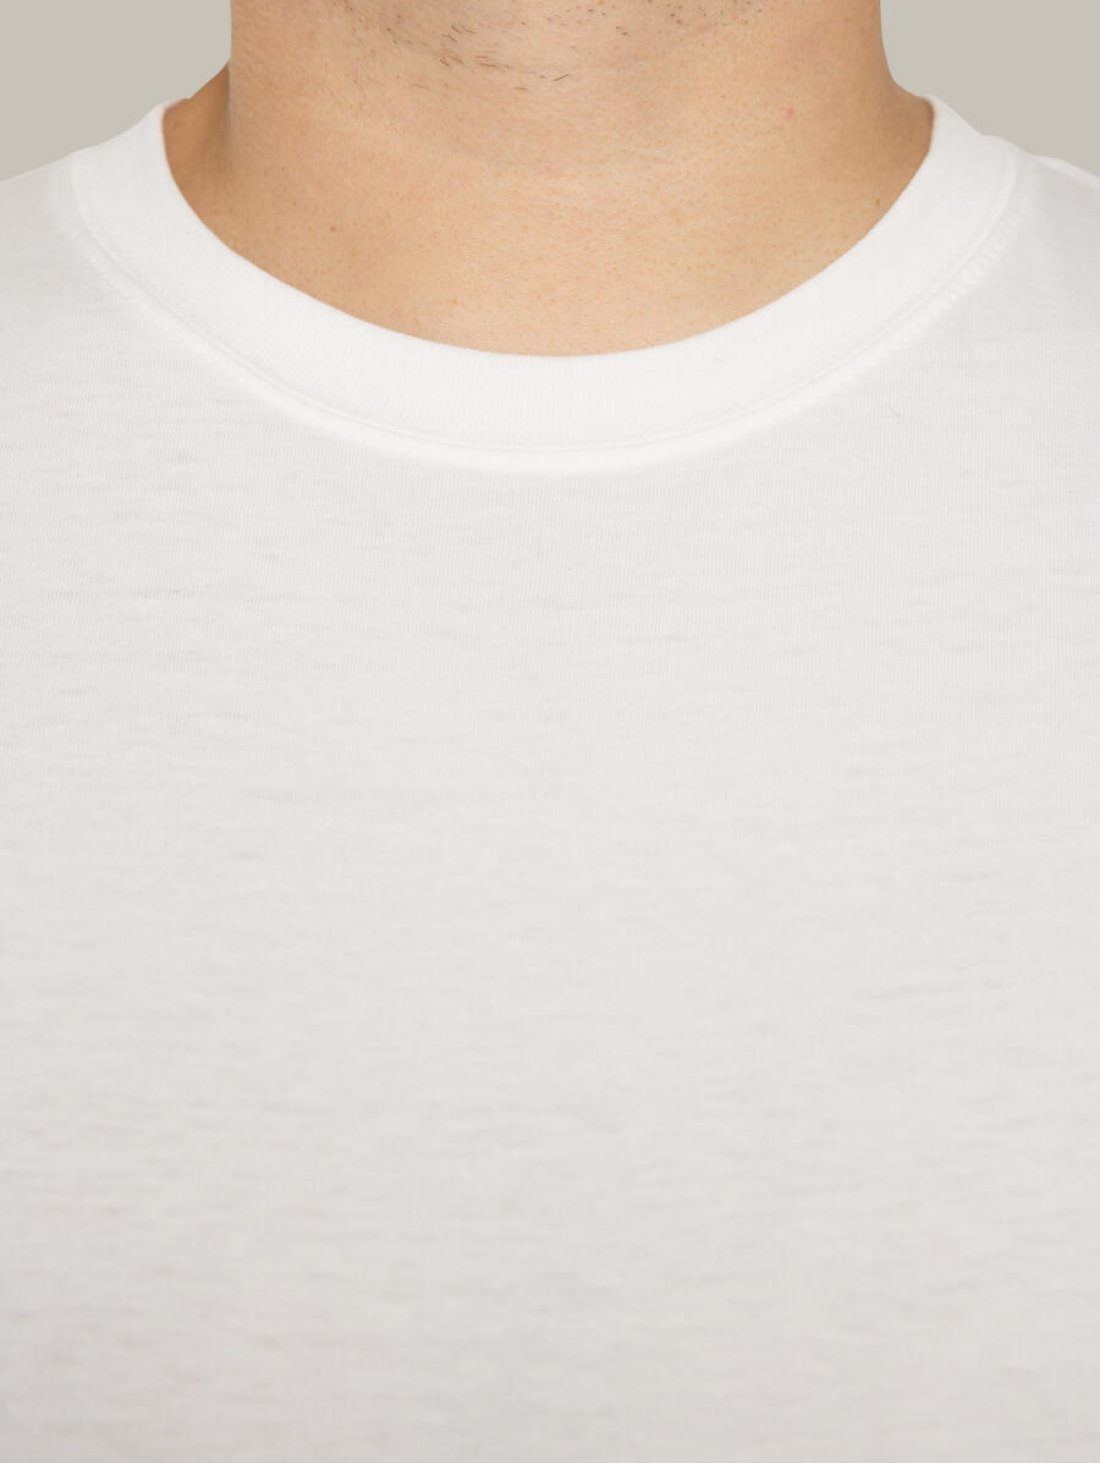 Чоловіча футболка, біла з принтом аватара Military Hopper 803 (Кім)